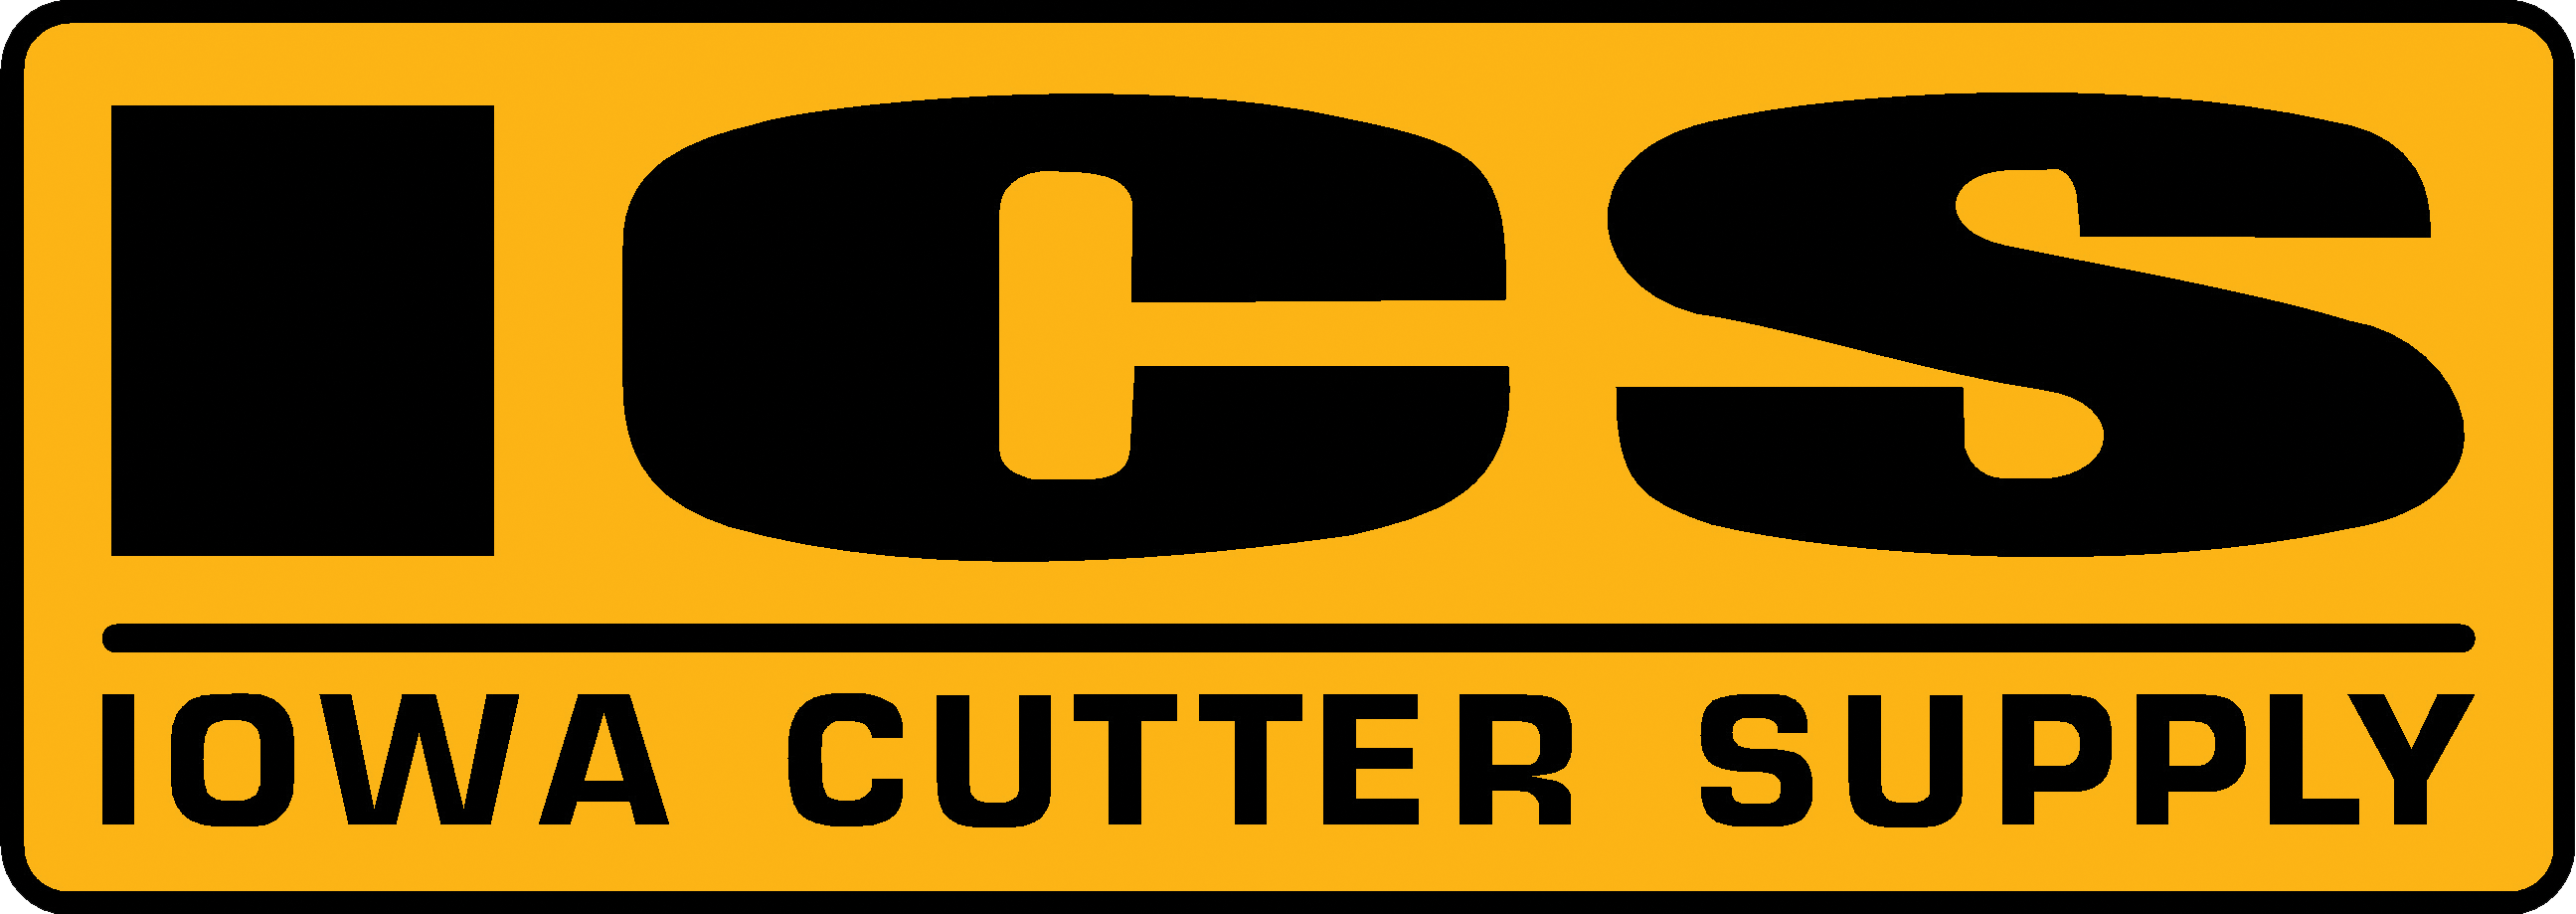 Iowa Cutter Supply